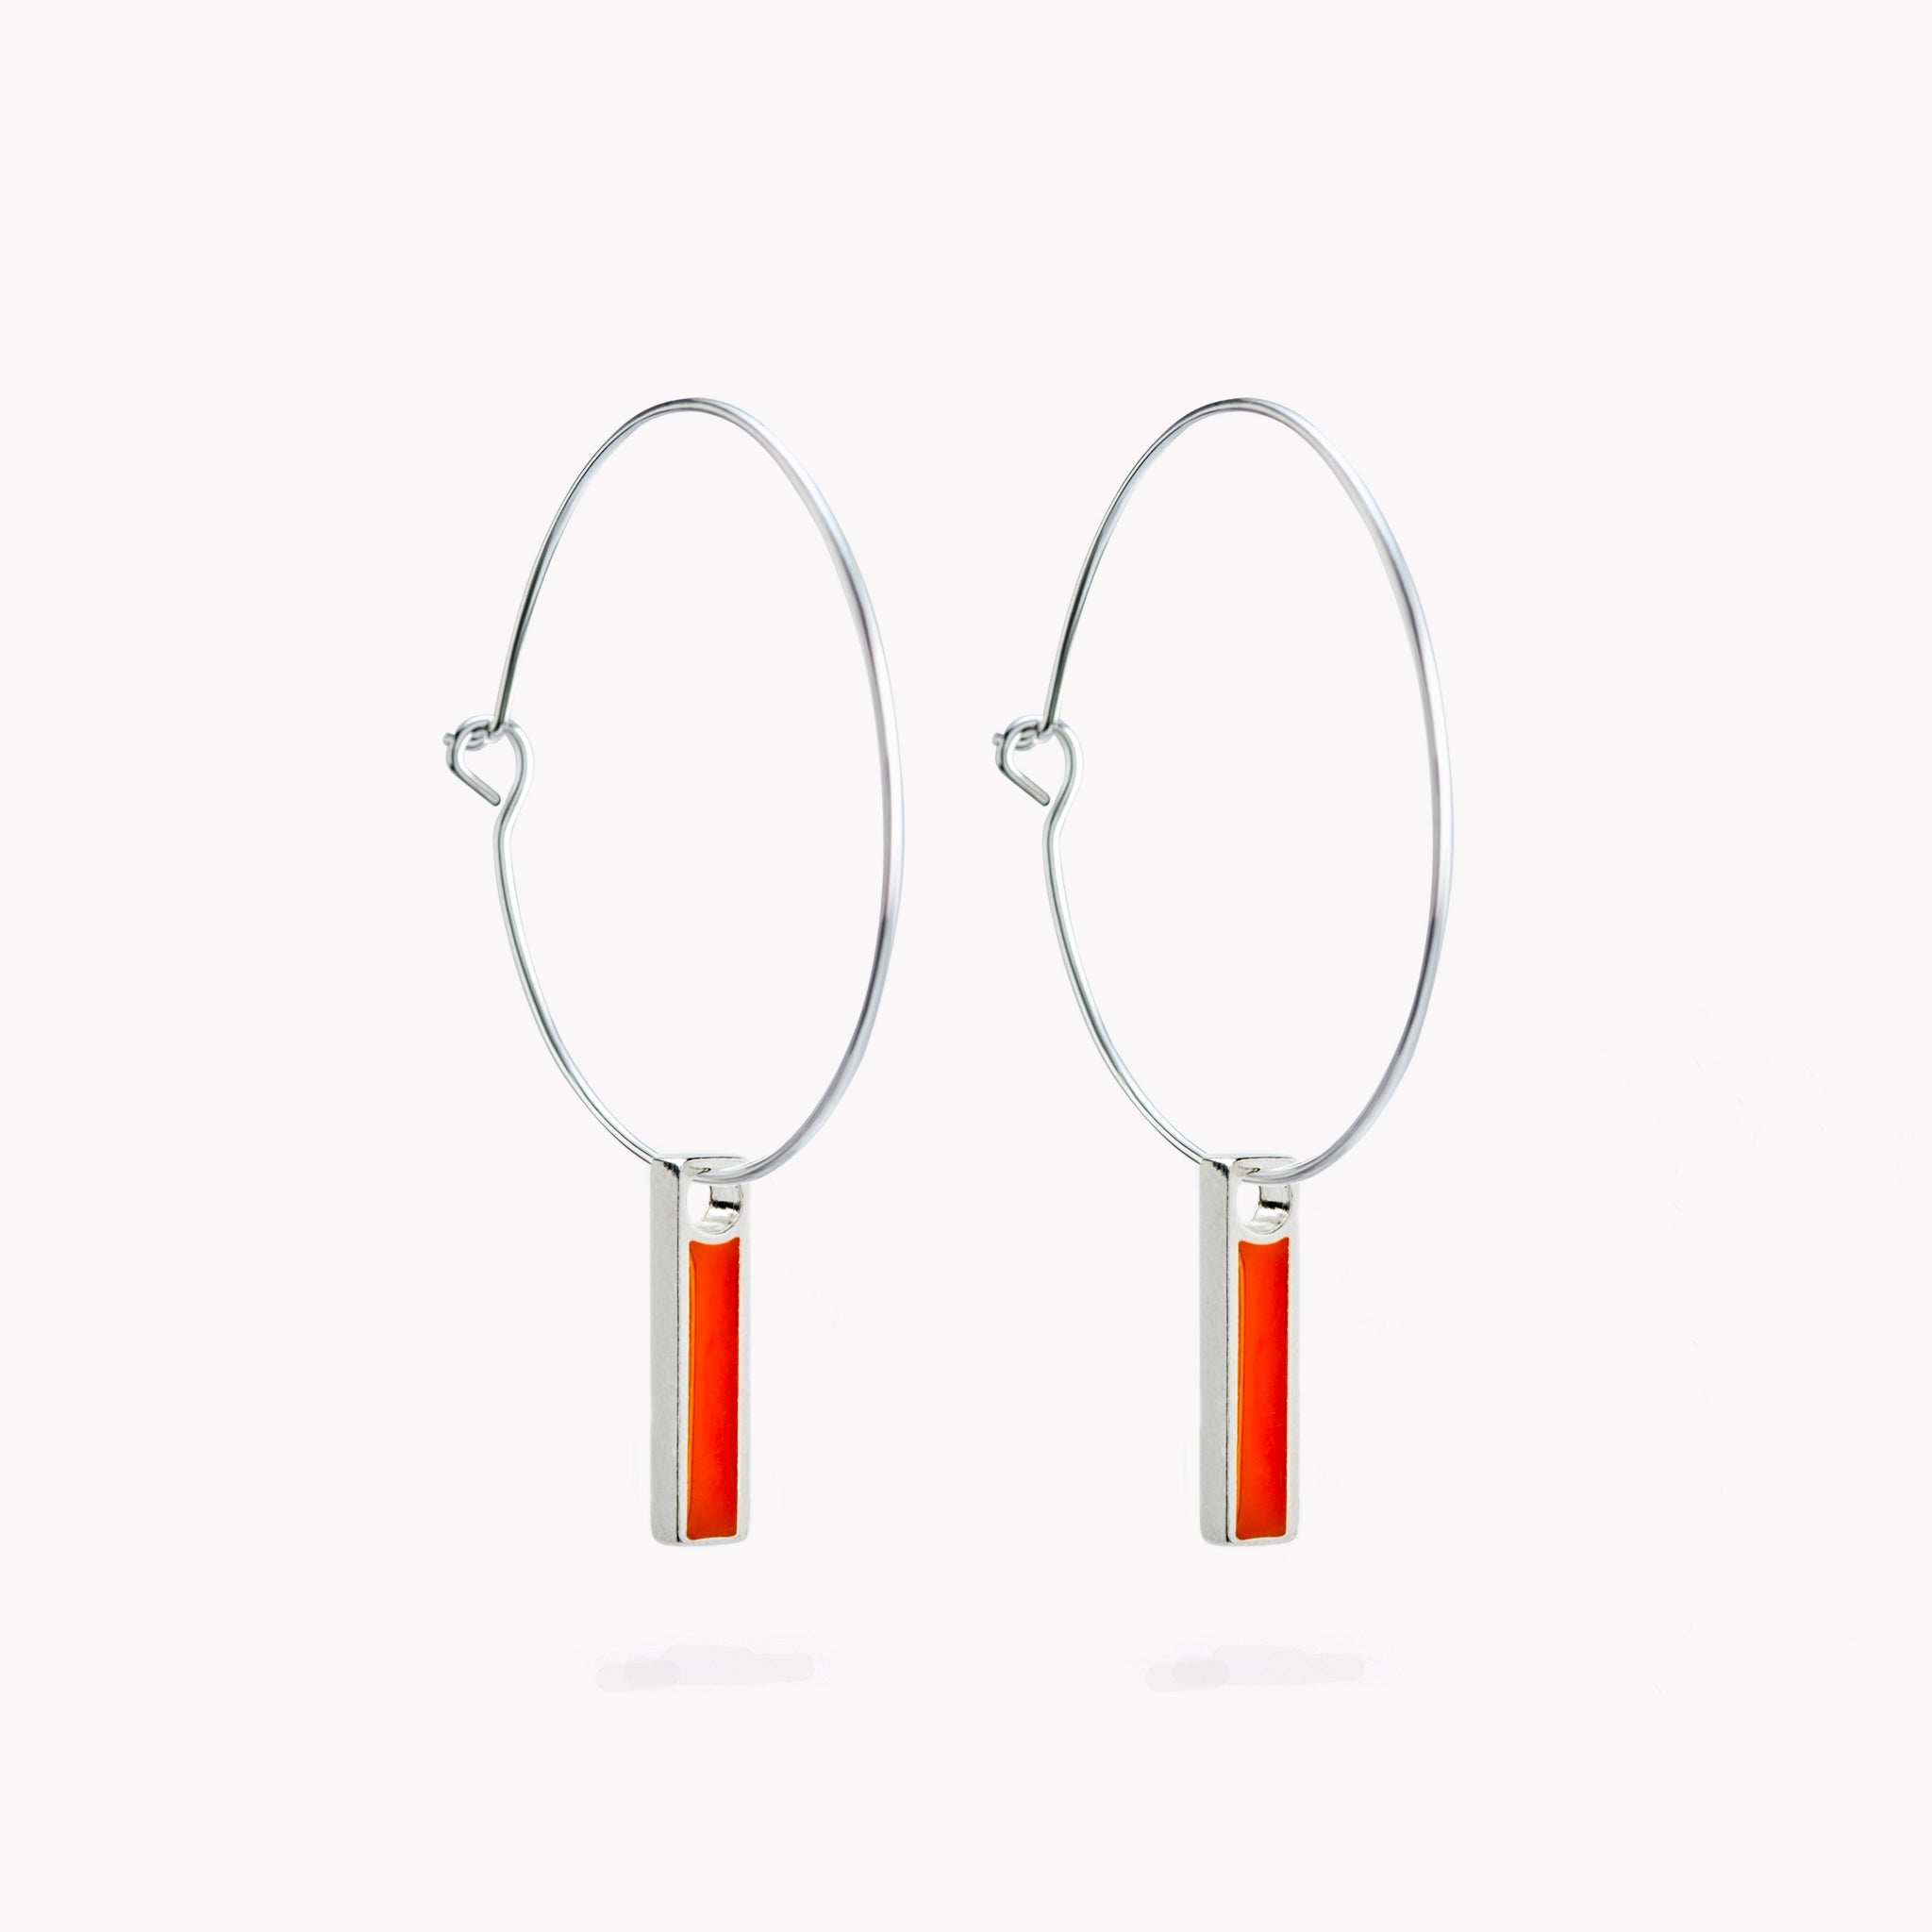 A pair of simple hoop earrings with a hanging orange bar.